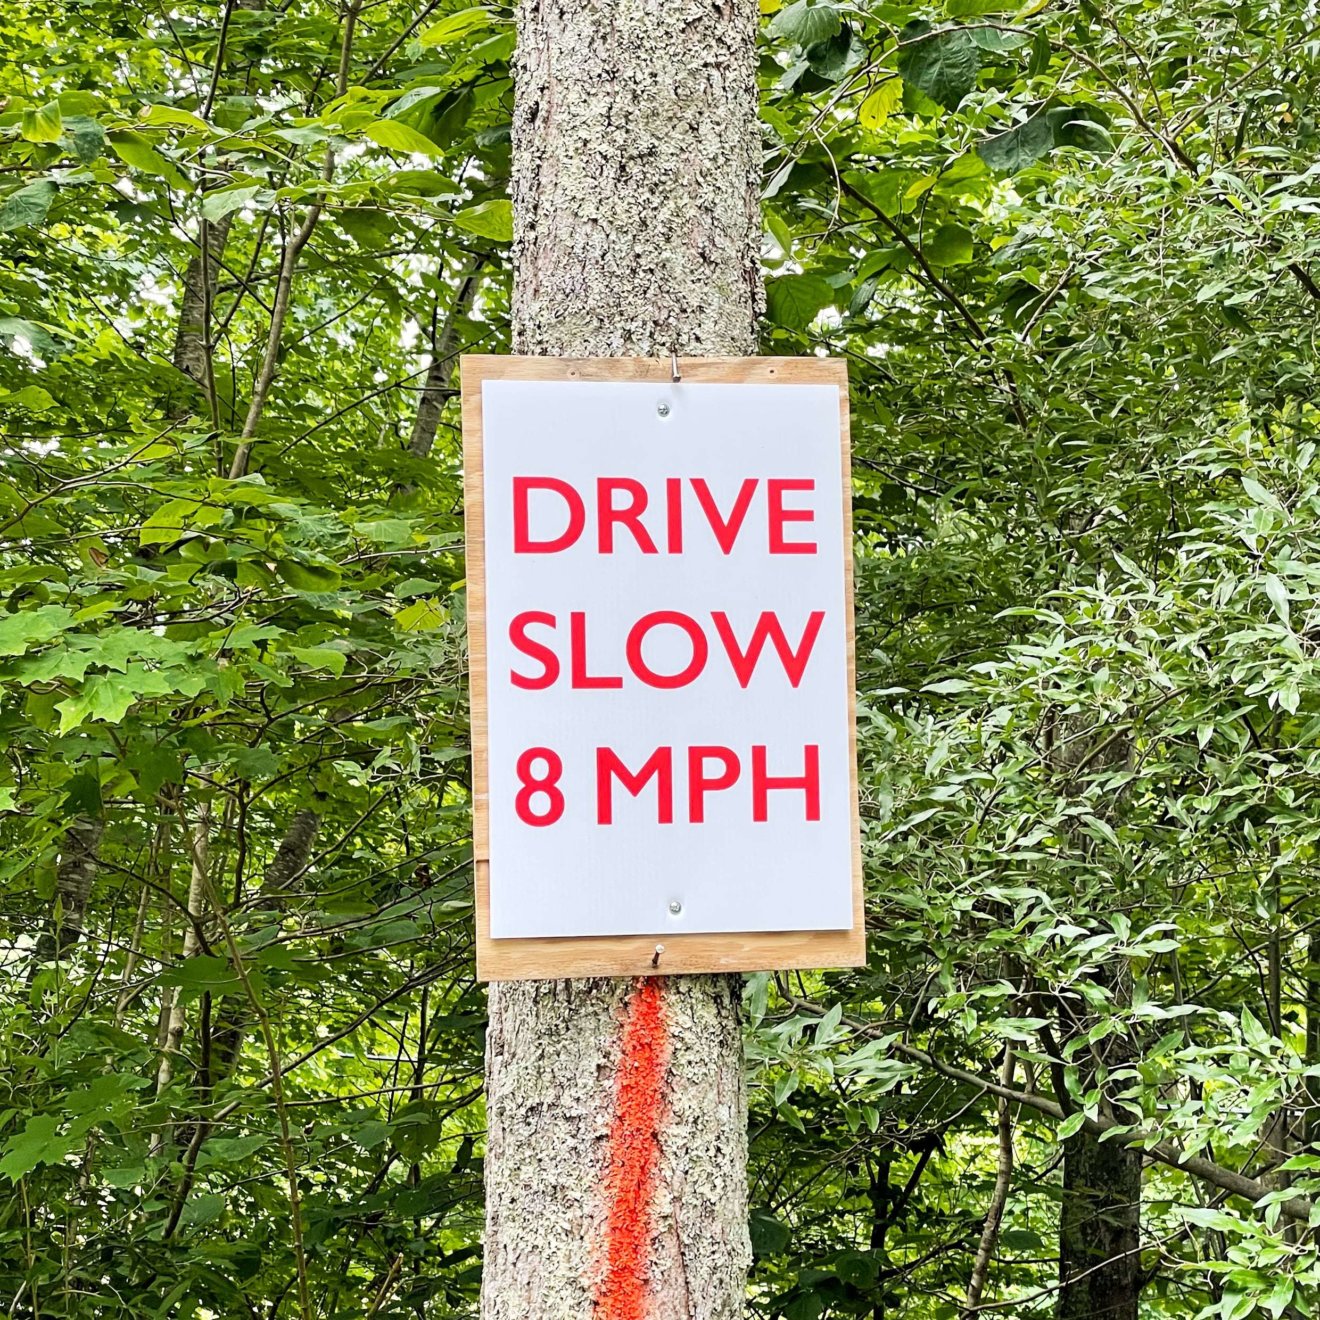 Drive slow 8 mph